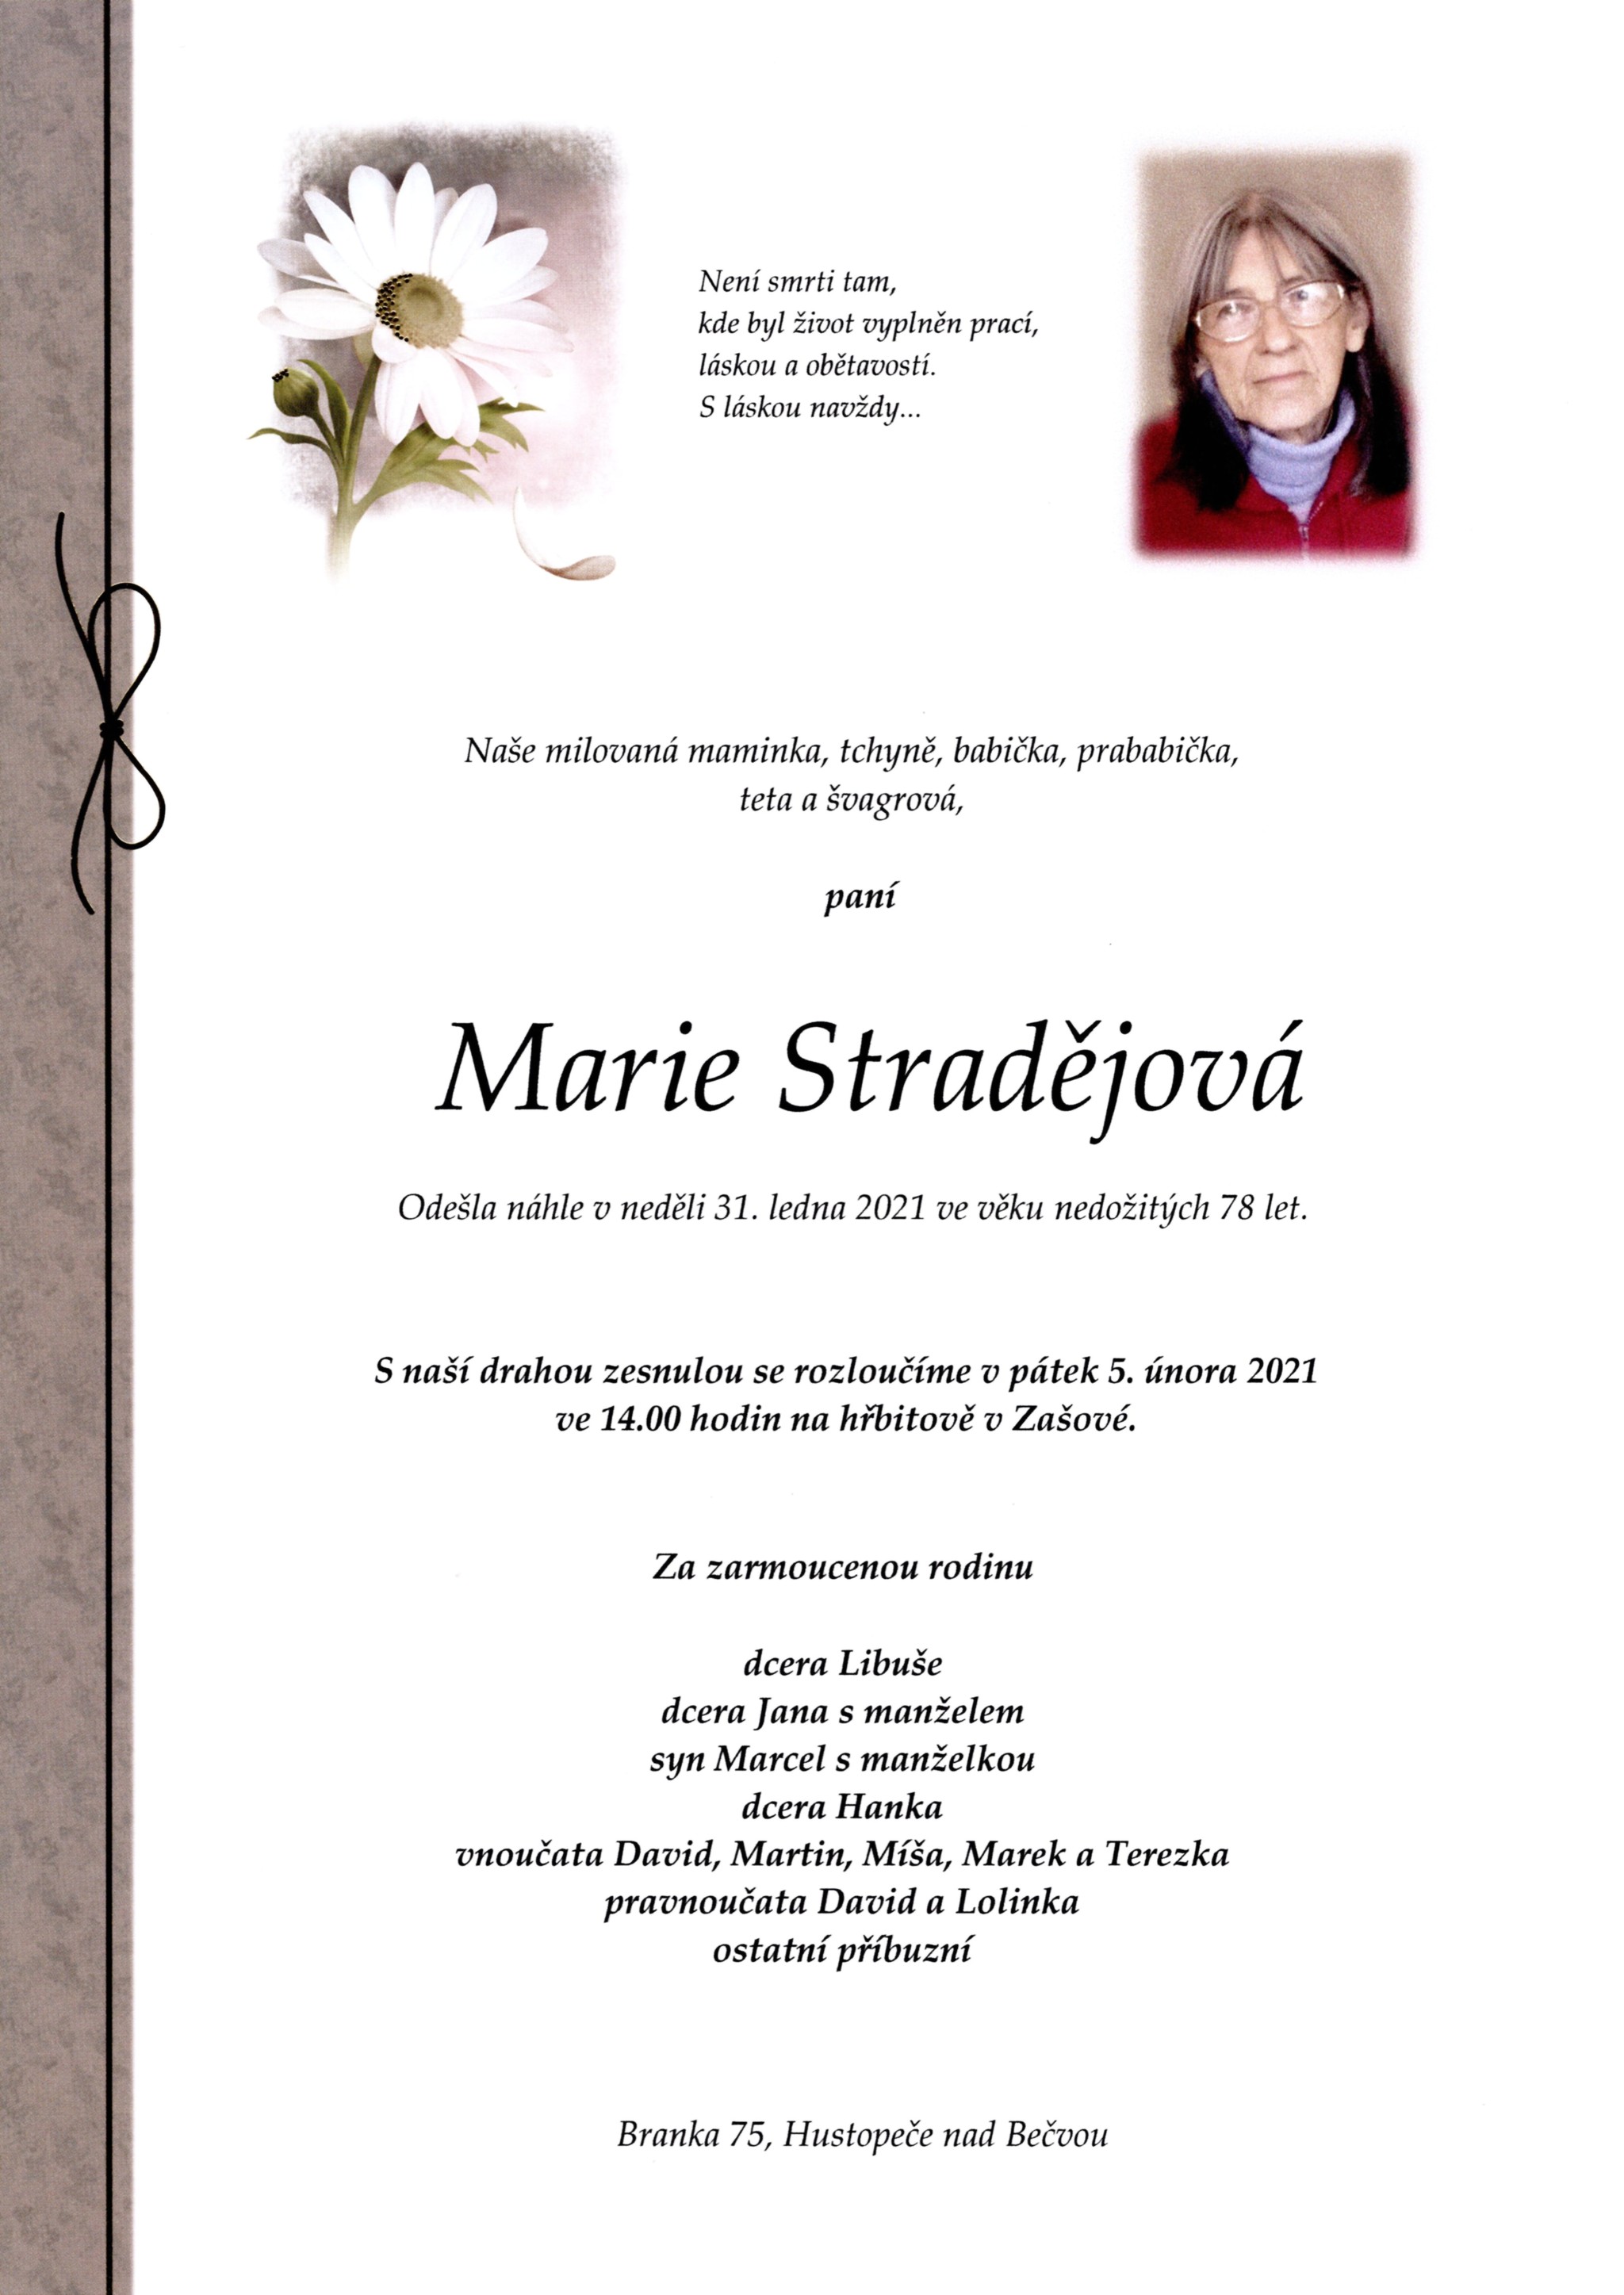 Marie Stradějová